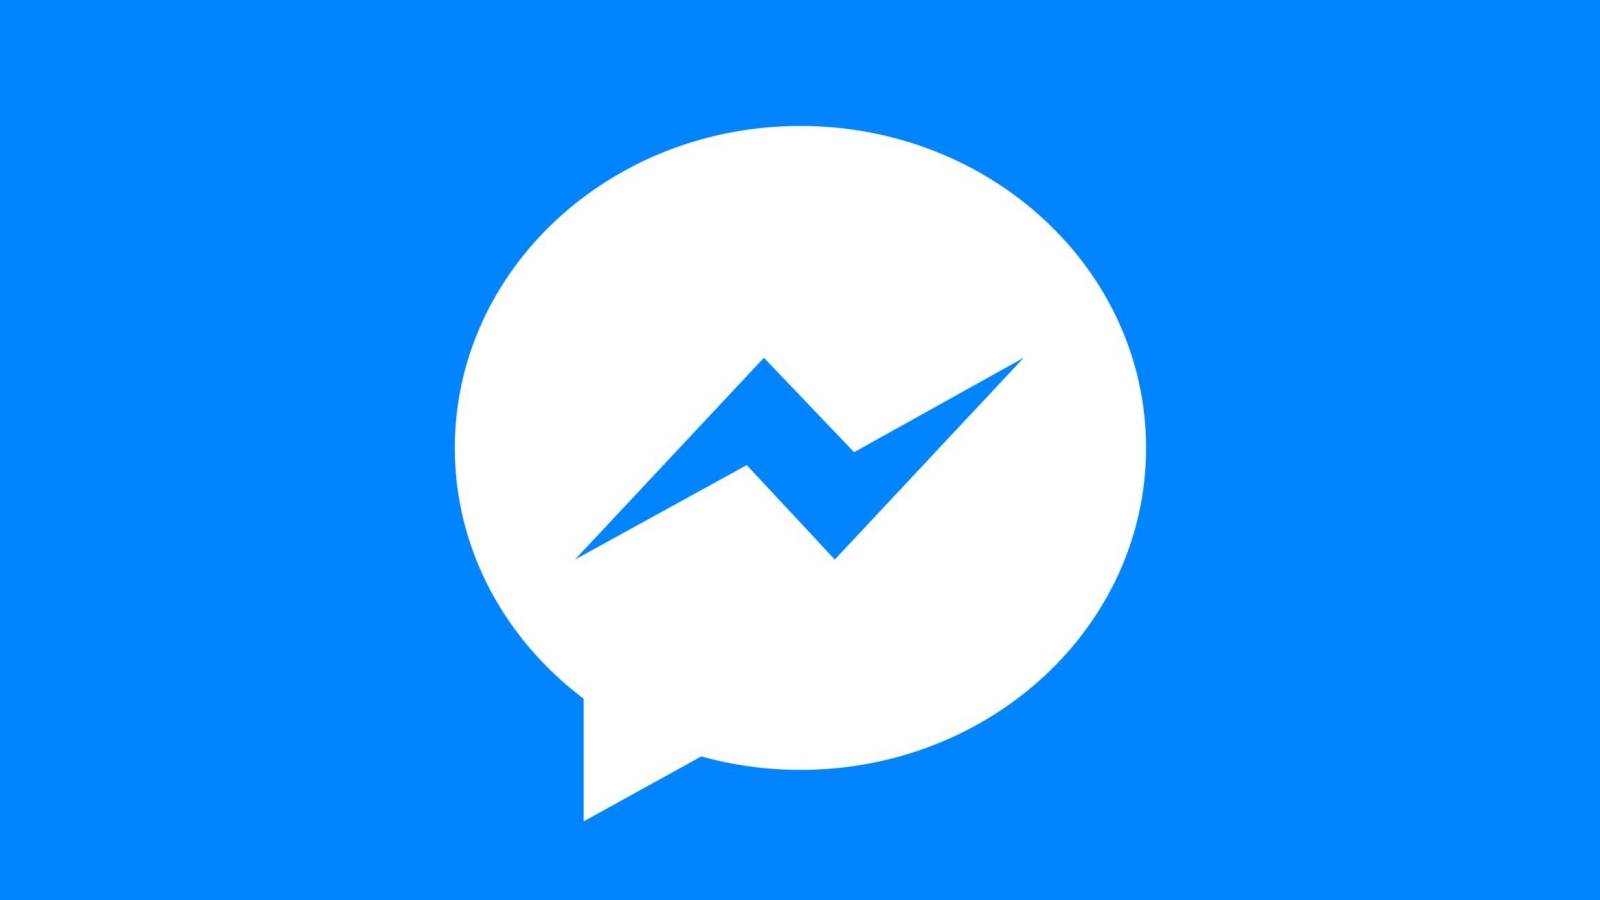 Rilasciato l'aggiornamento di Facebook Messenger, quali modifiche apporta ora